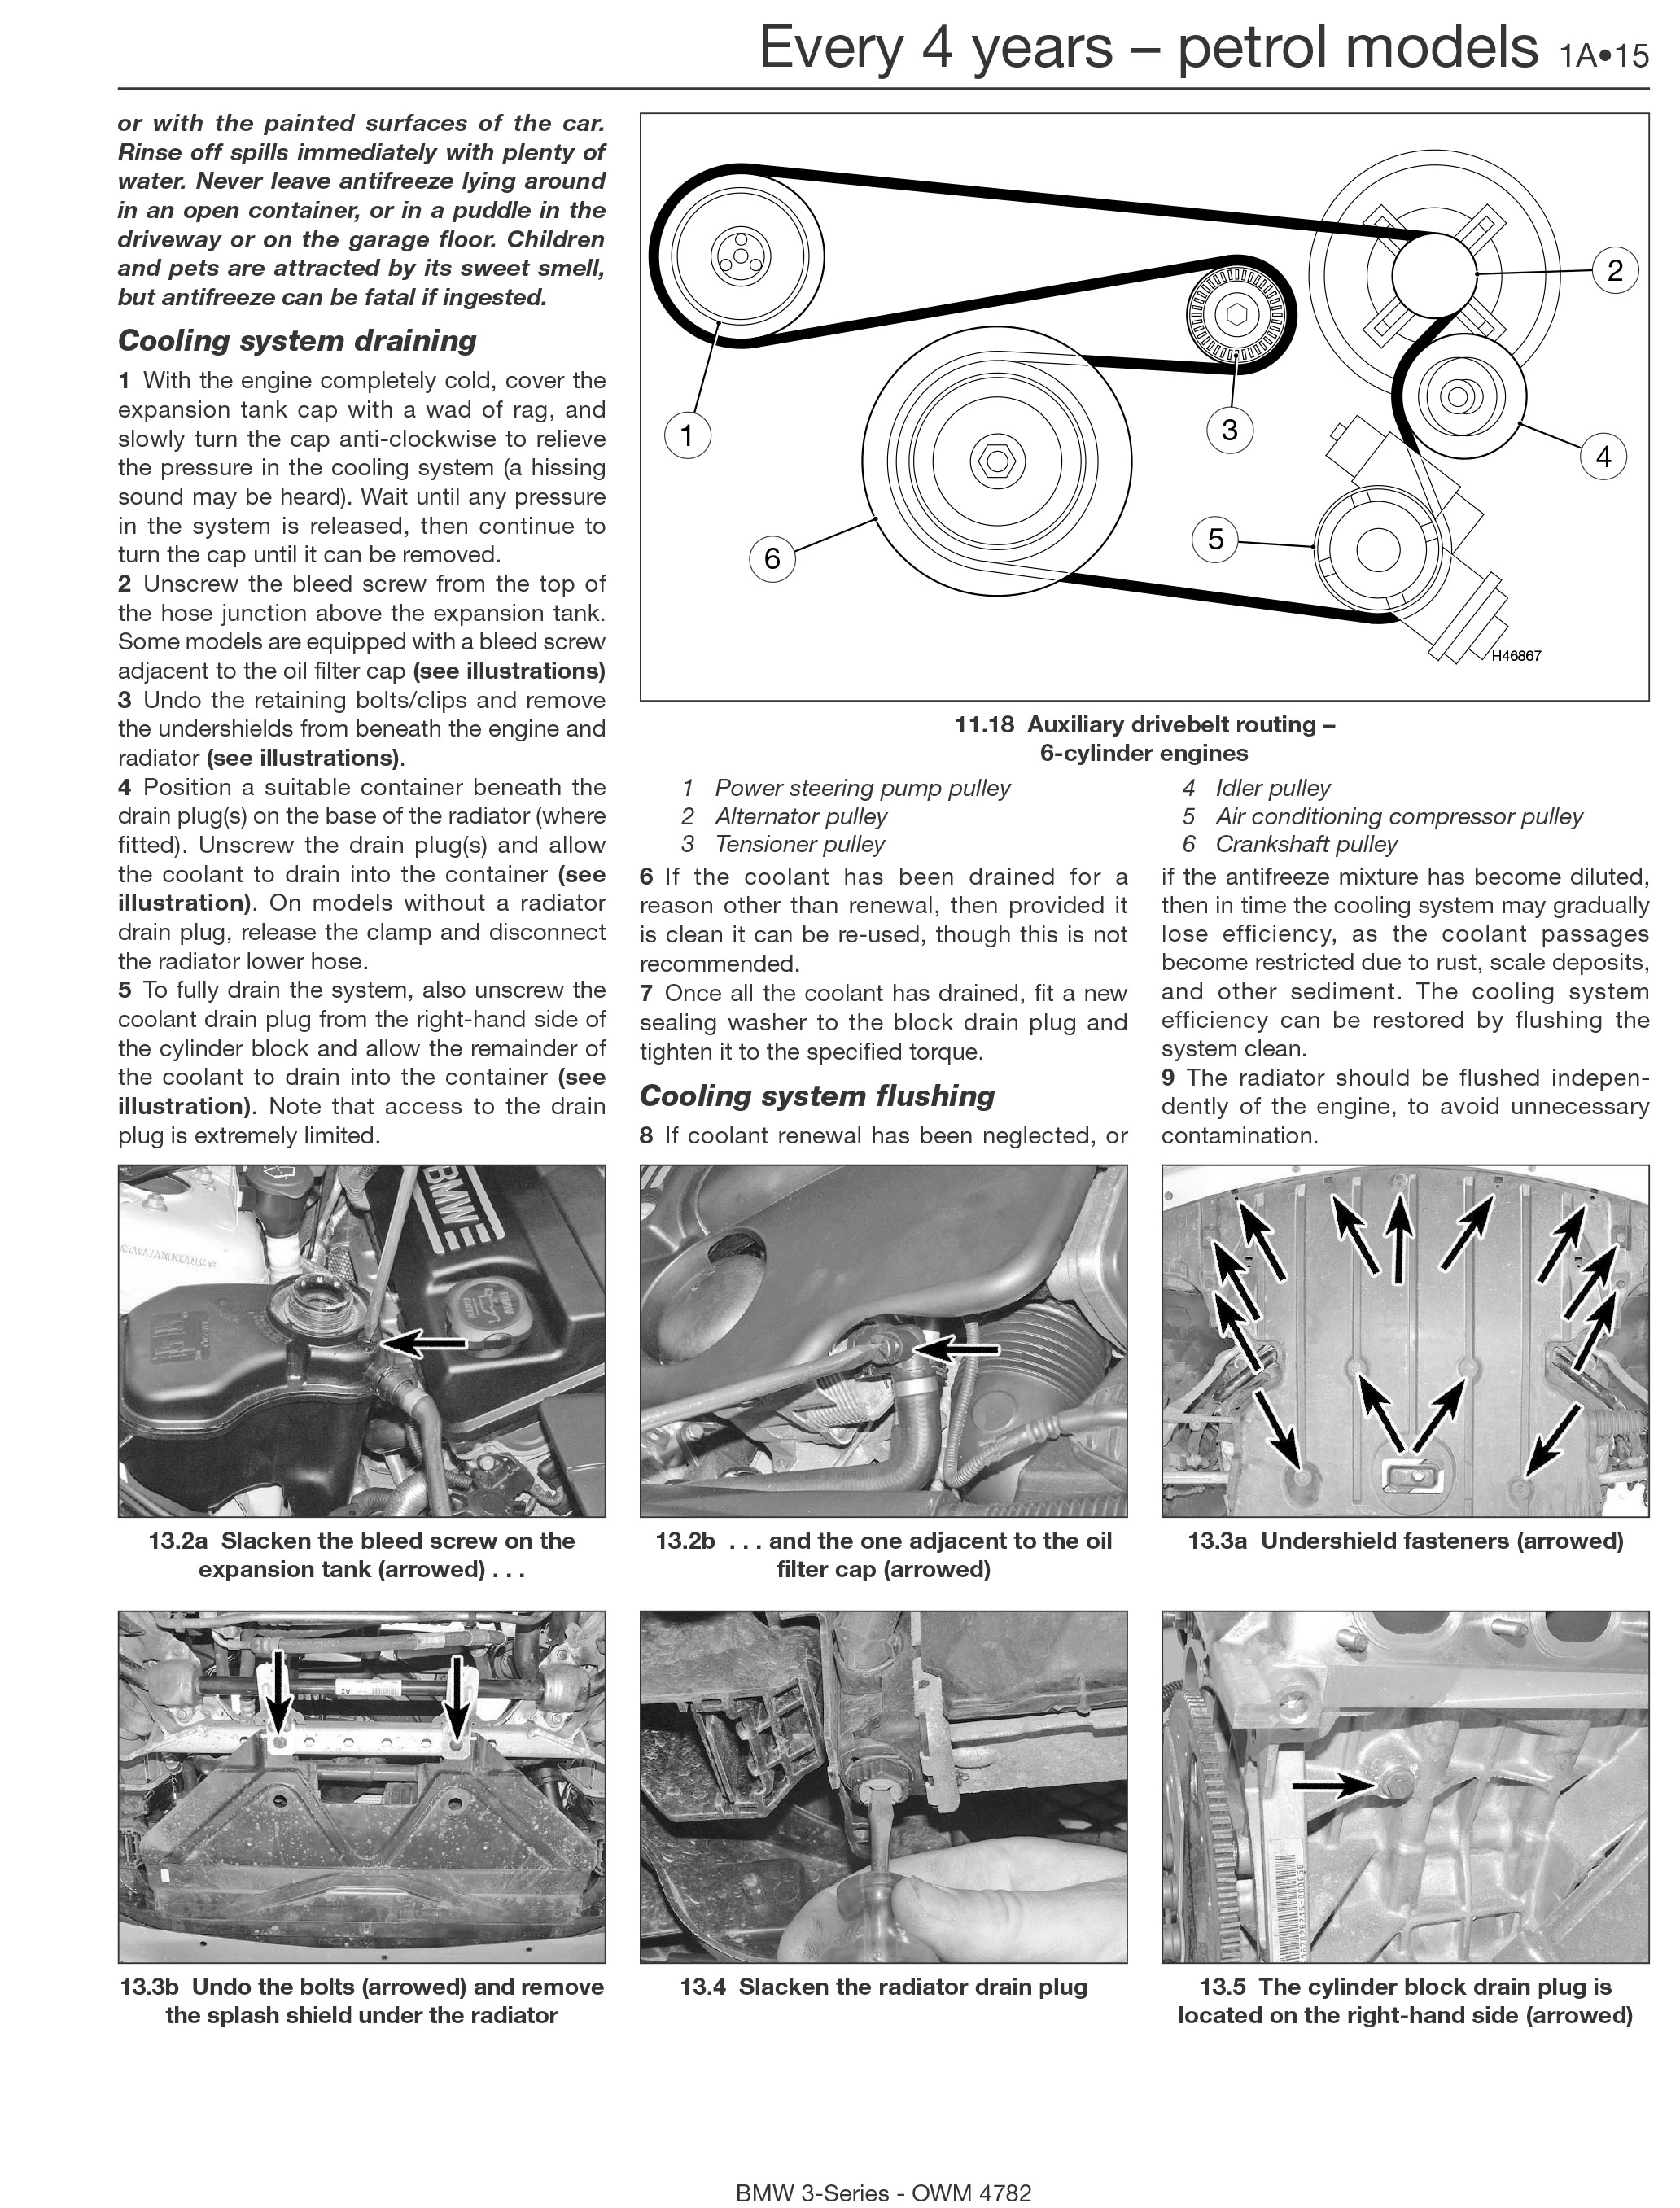 haynes repair manual pdf free